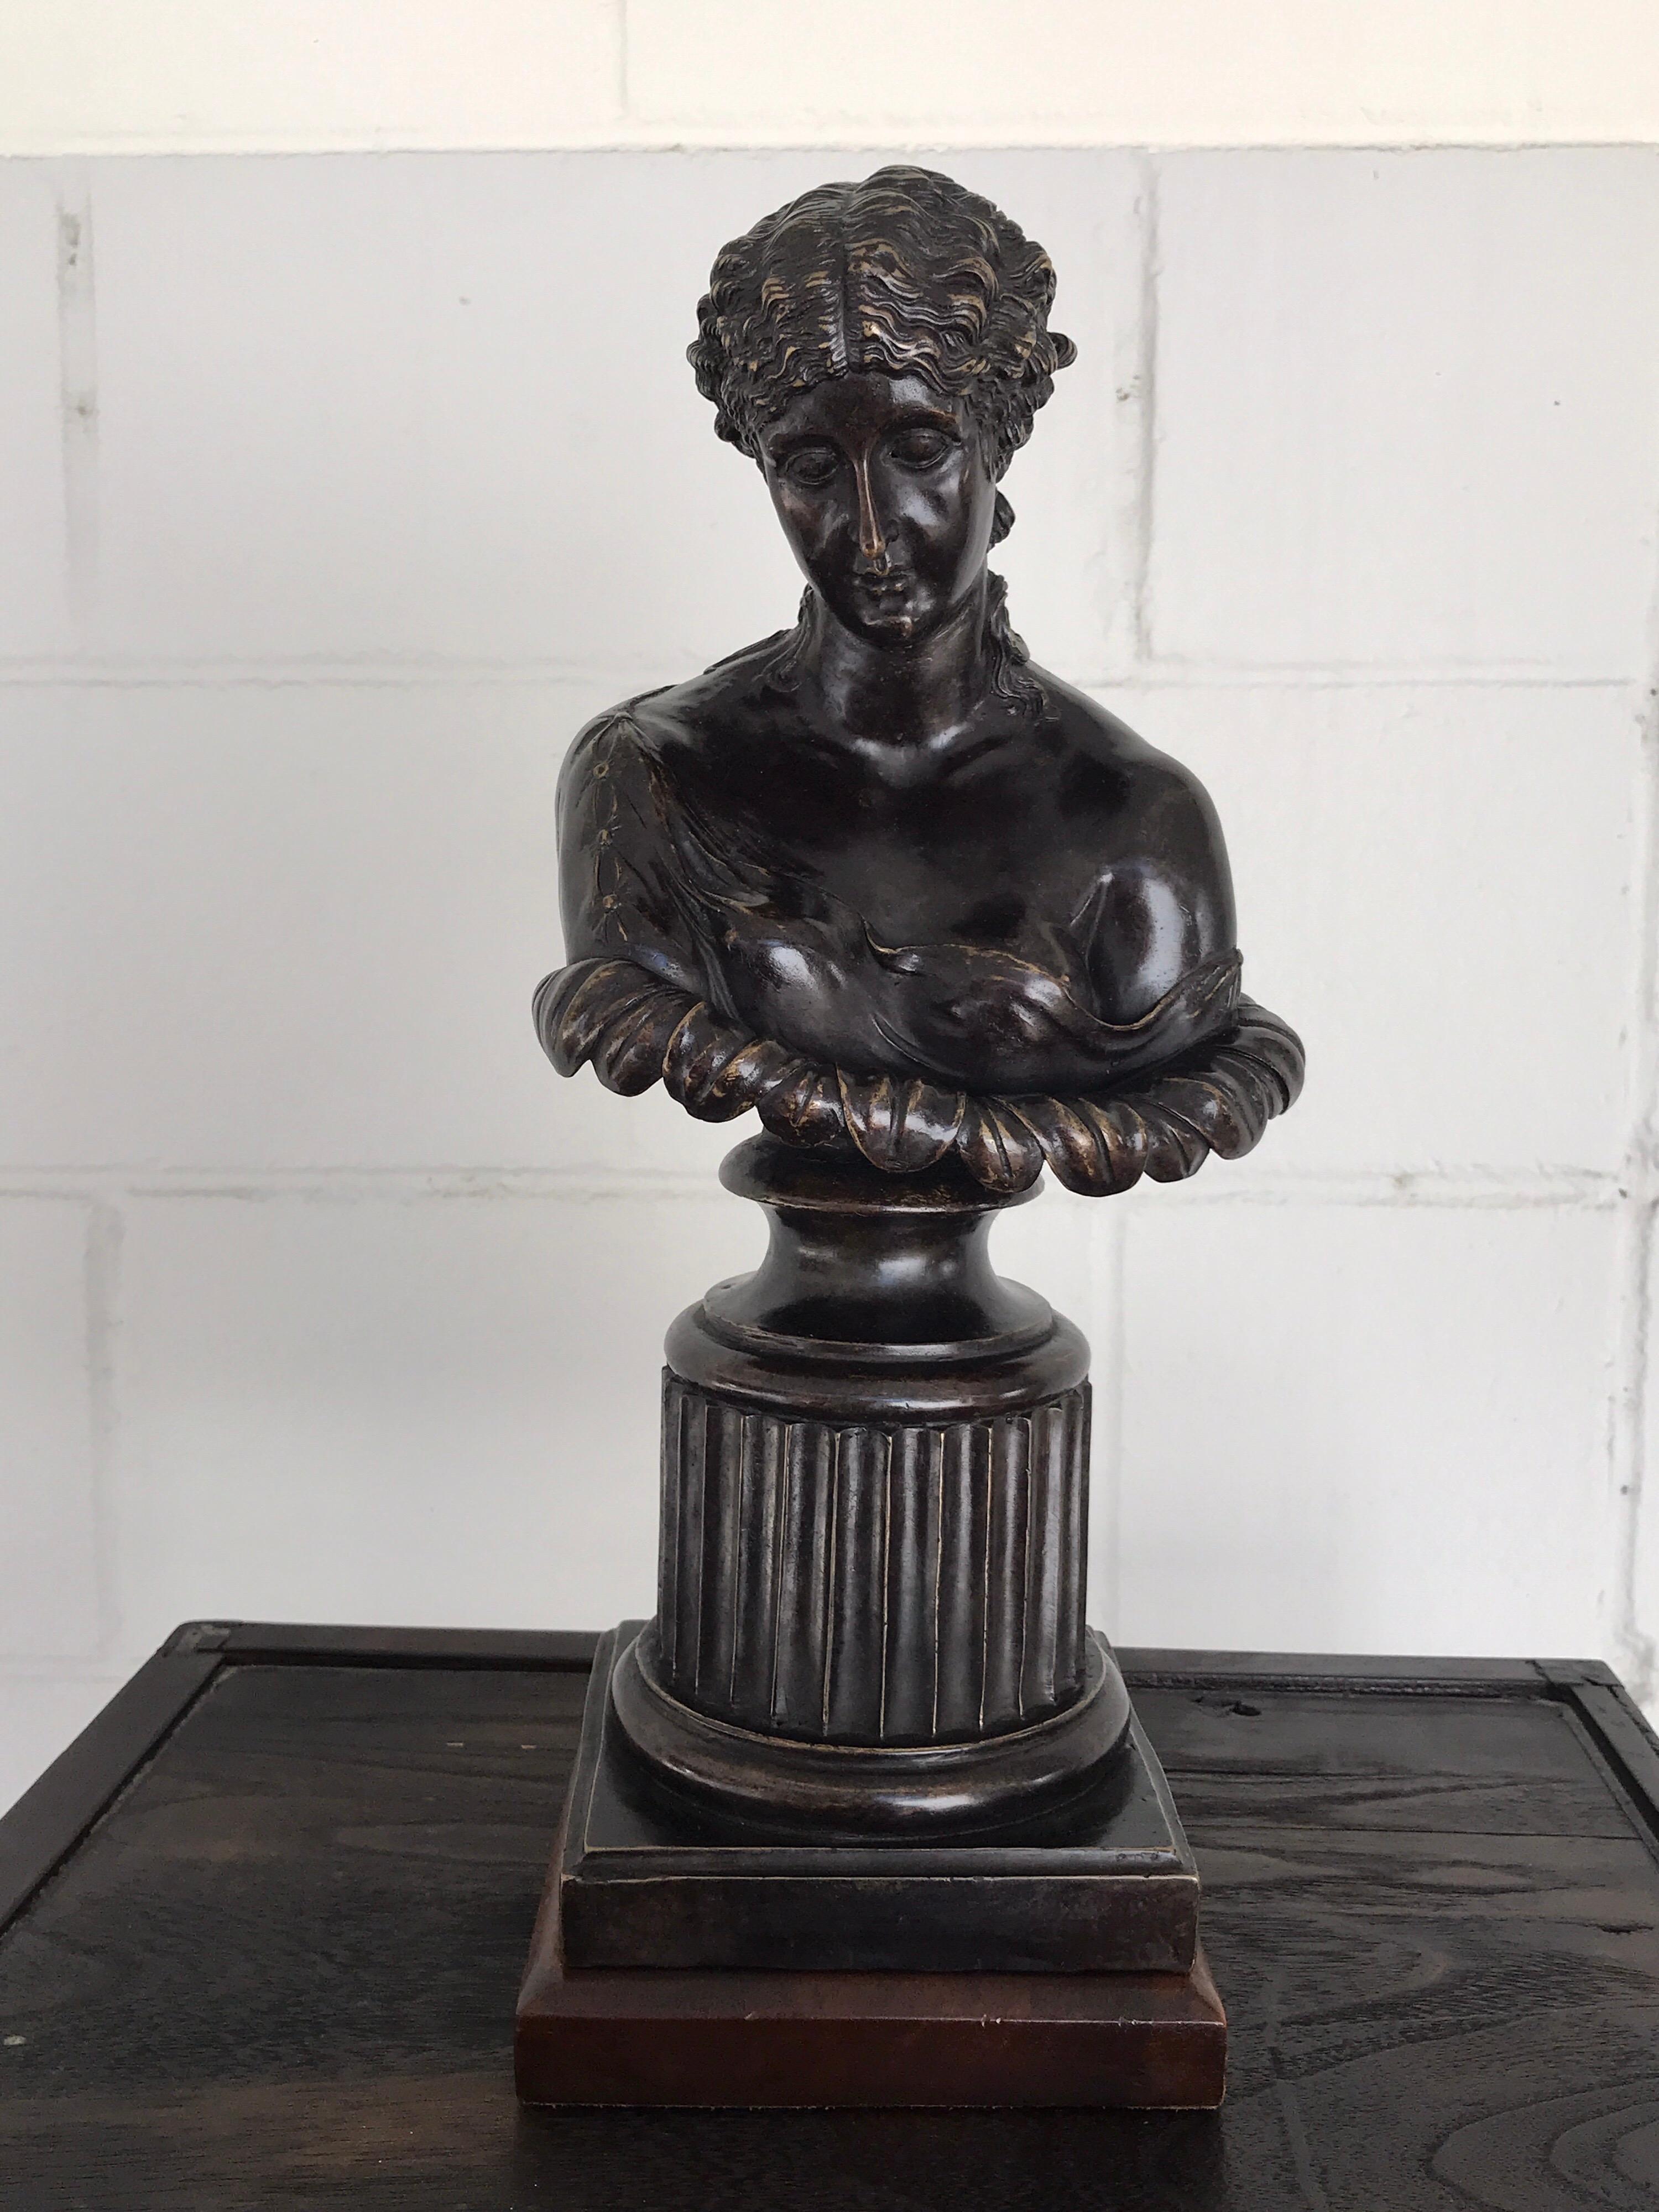 Buste en bronze de style Grand Tour de Clytie, d'après l'antique, la nymphe au visage abattu et peu drapé, coiffée d'une grande fleur. Élevé sur un socle en bois carré de 6